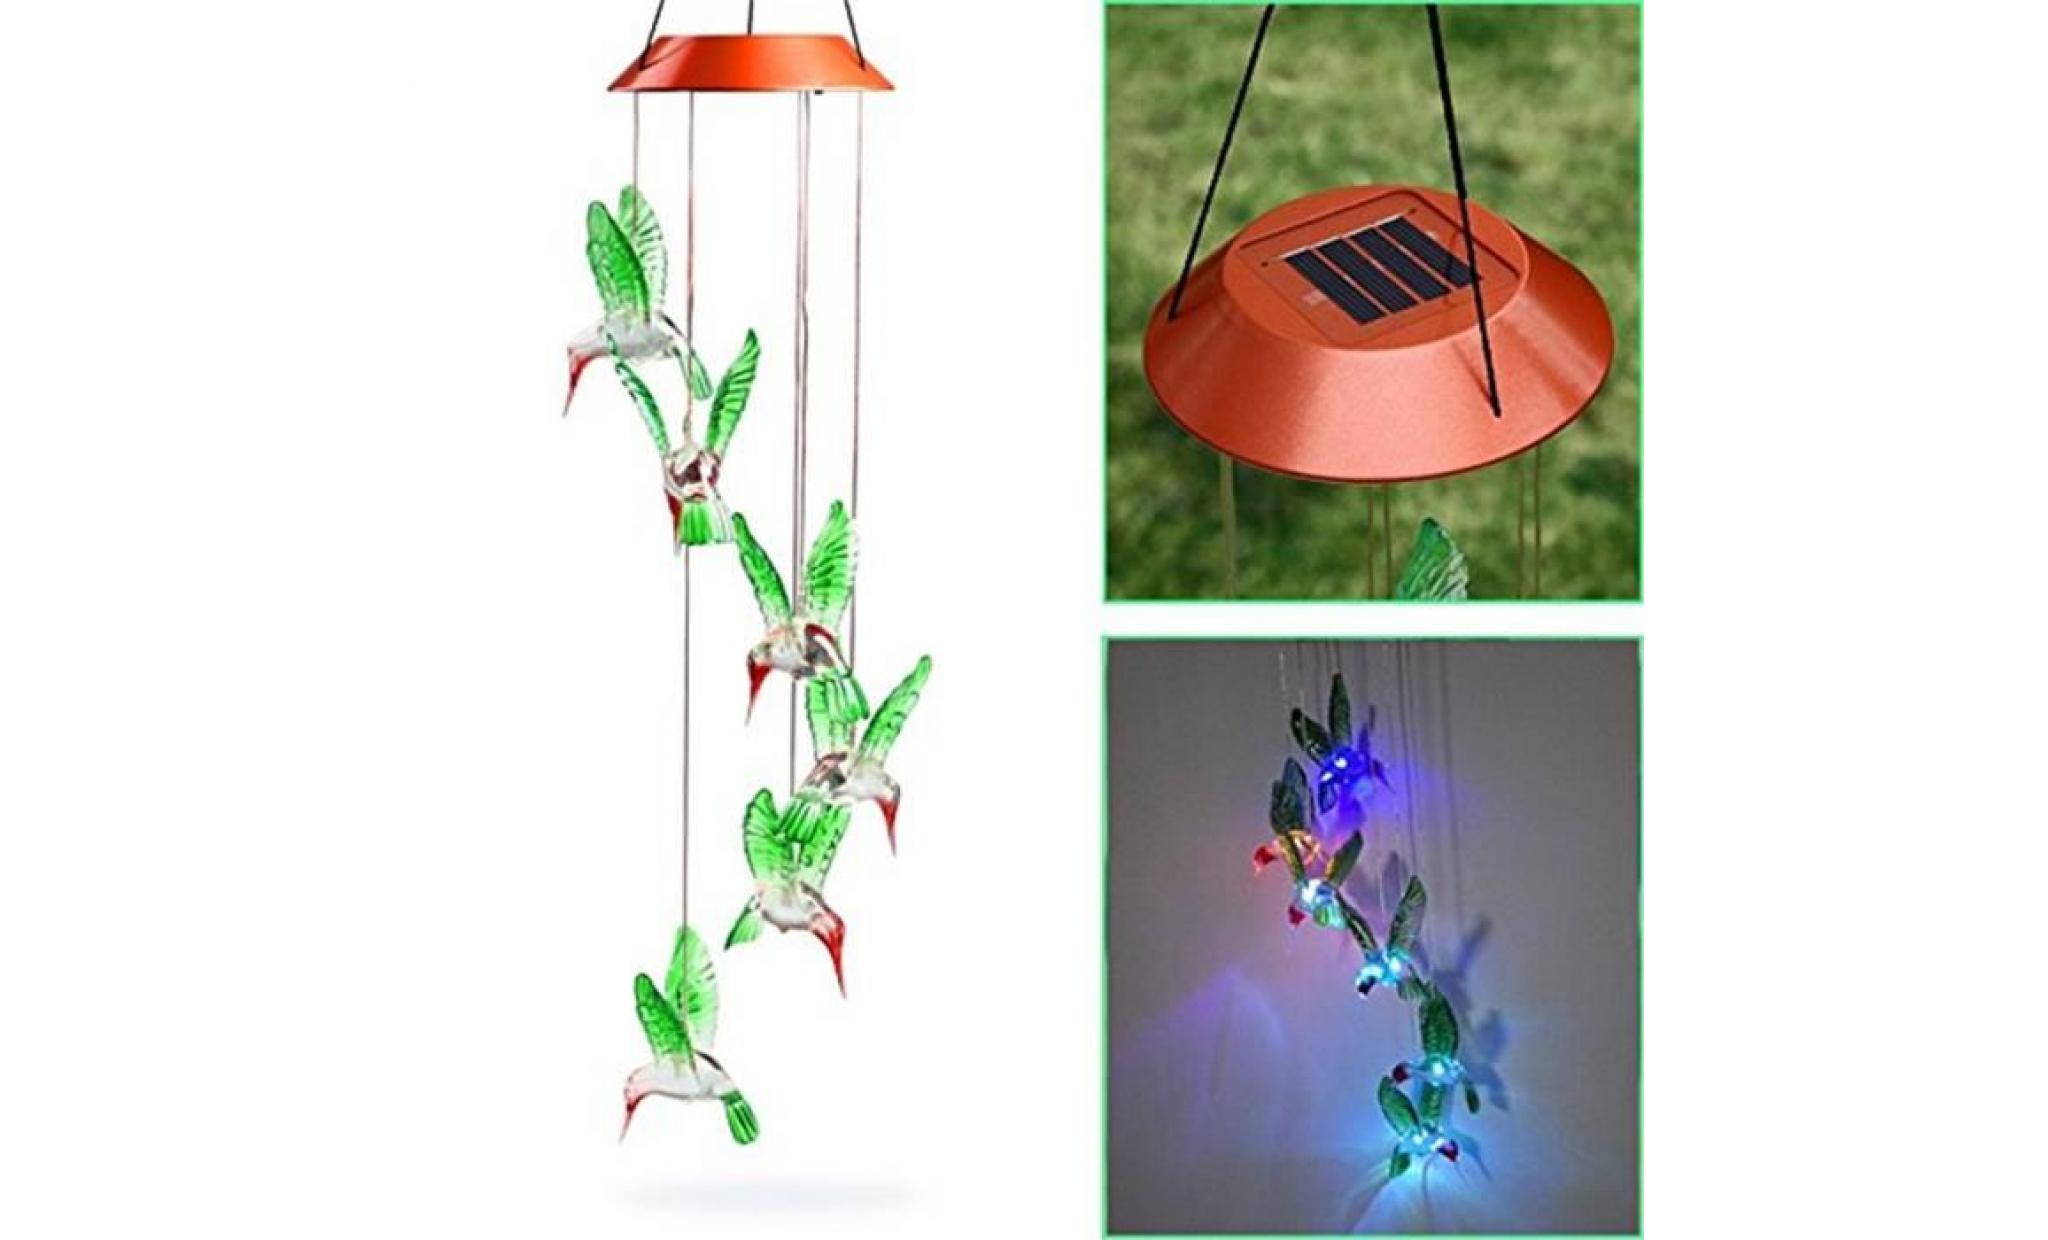 borne solaire vent changeant de colibri de vent solaire de carillon de vent de led pour l'éclairage de jardinage #la 225